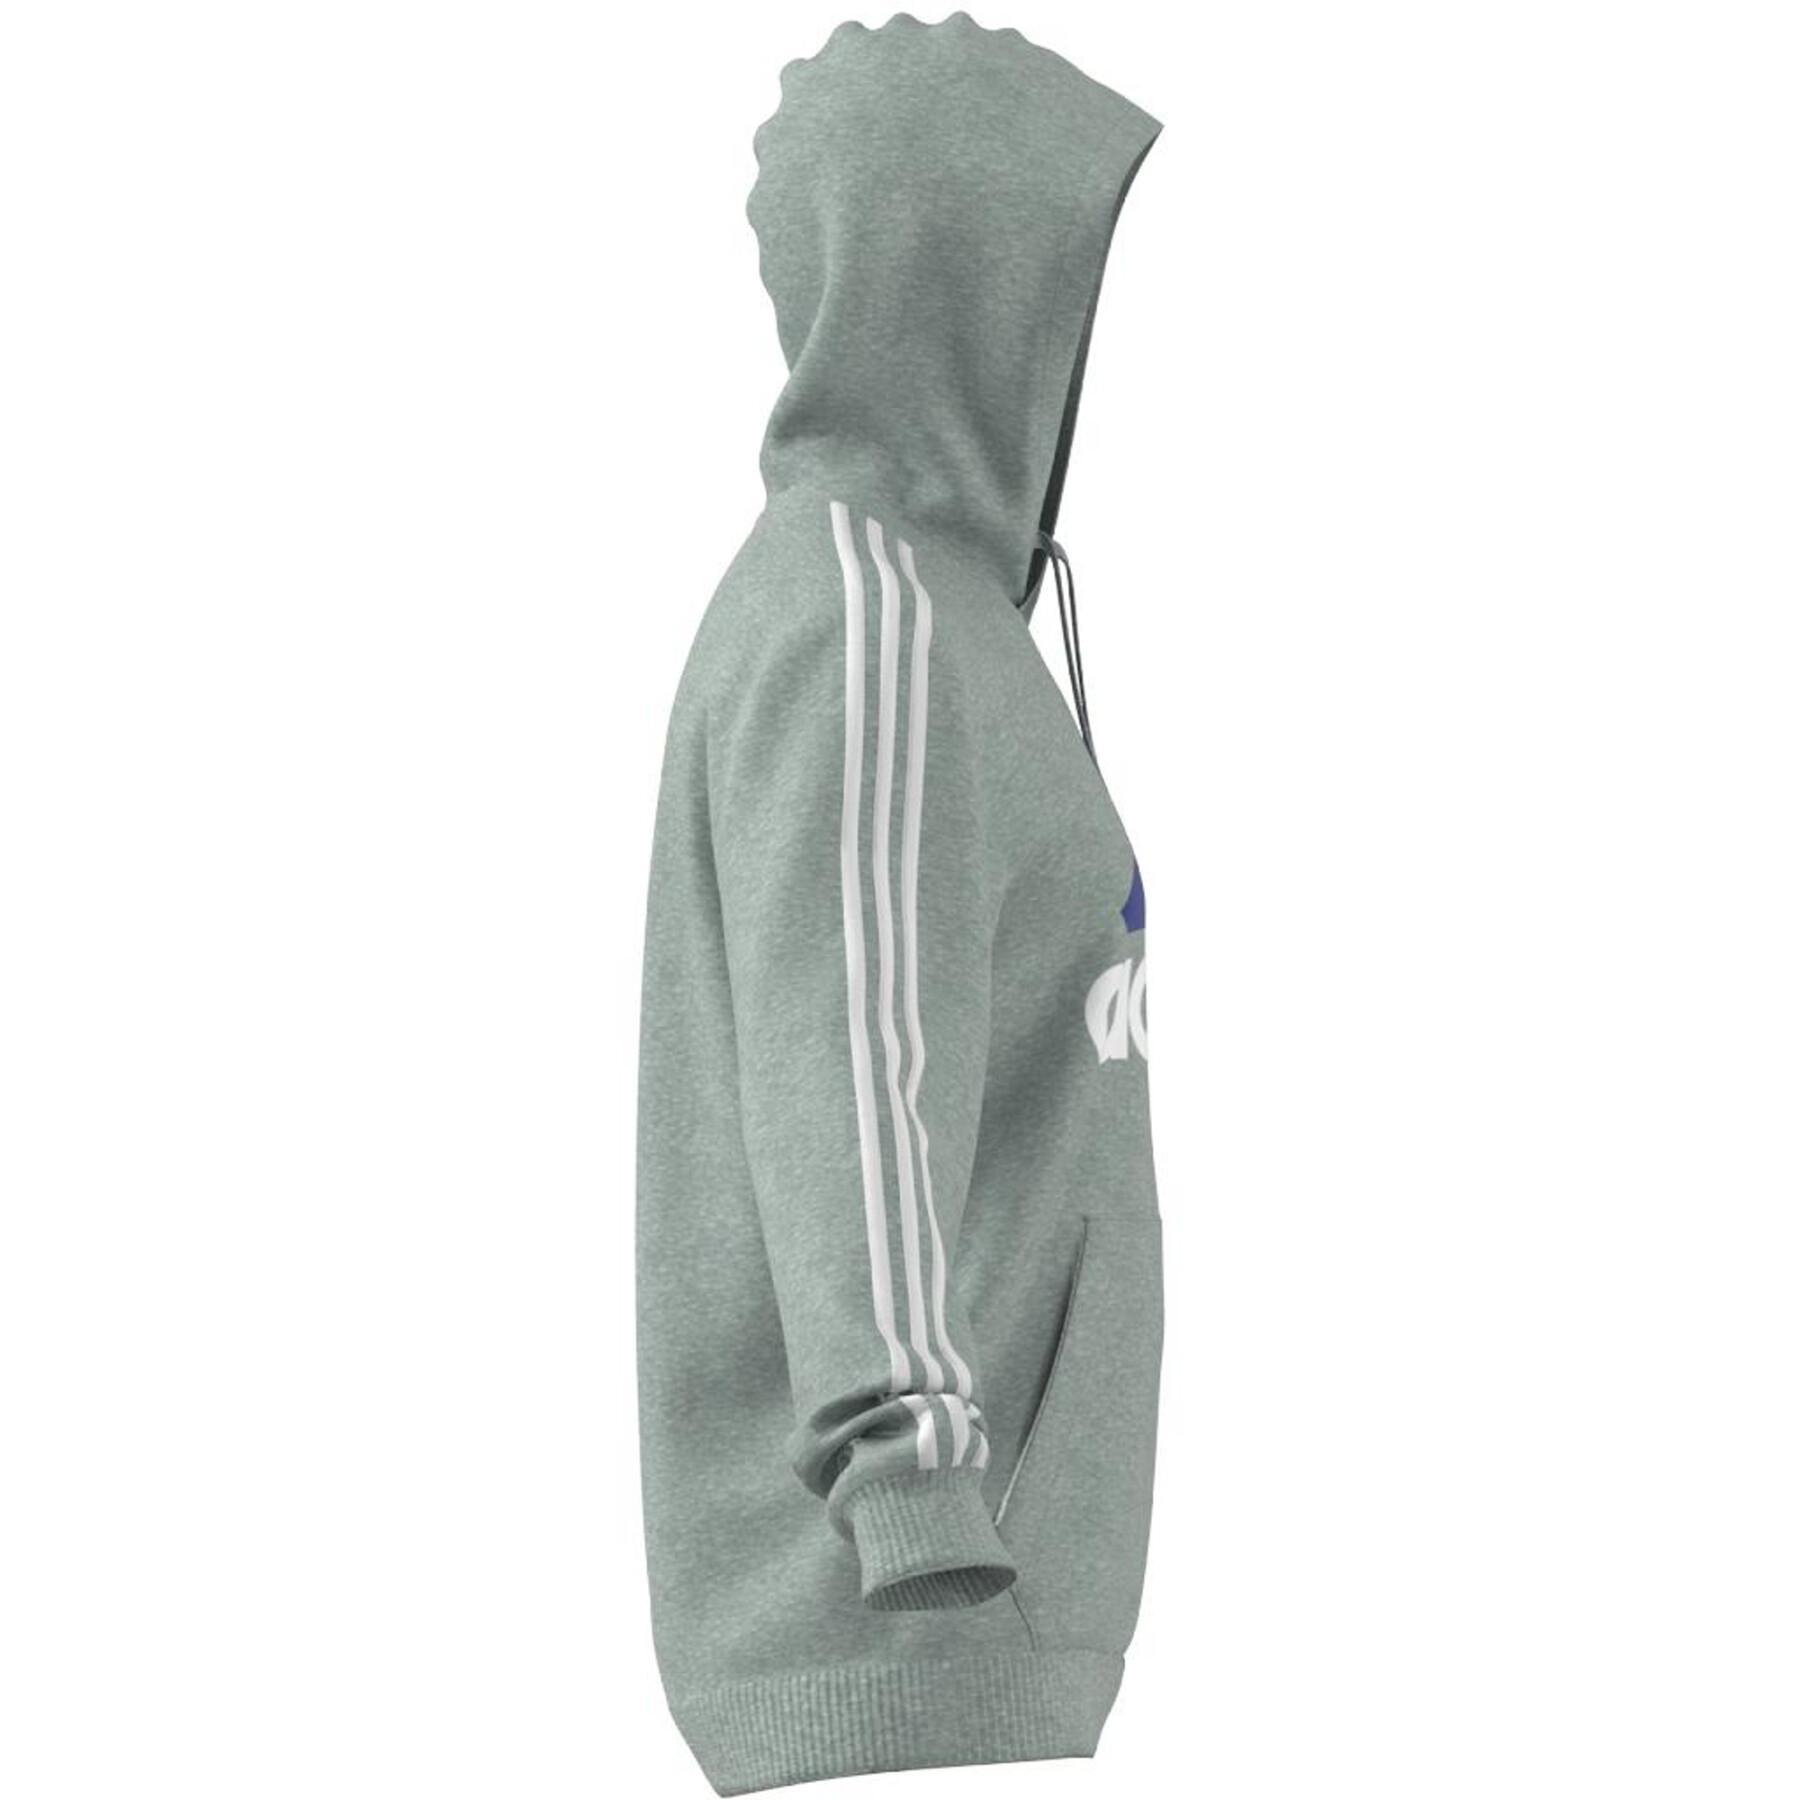 Camisola com capuz adidas Essentials Fleece Logo